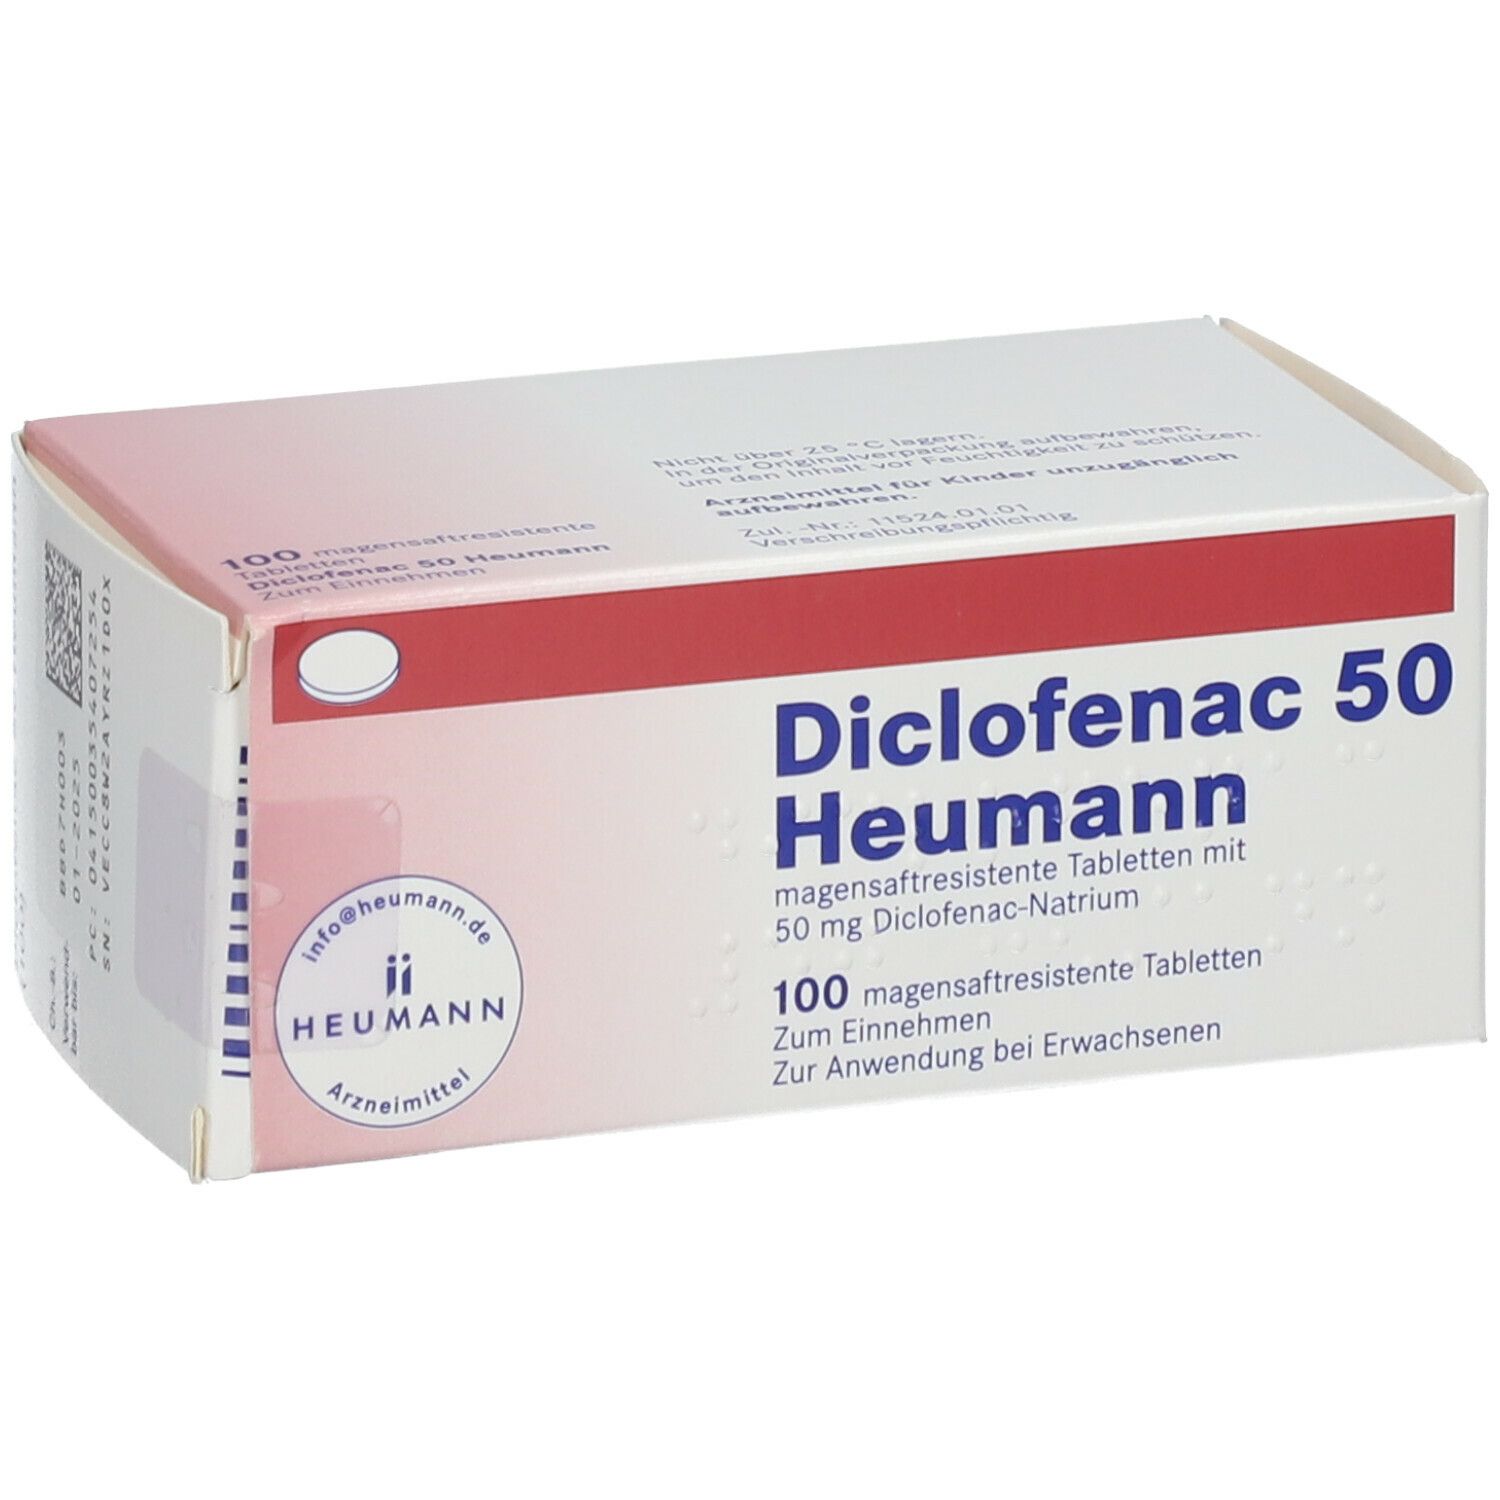 Diclofenac 50 Heumann